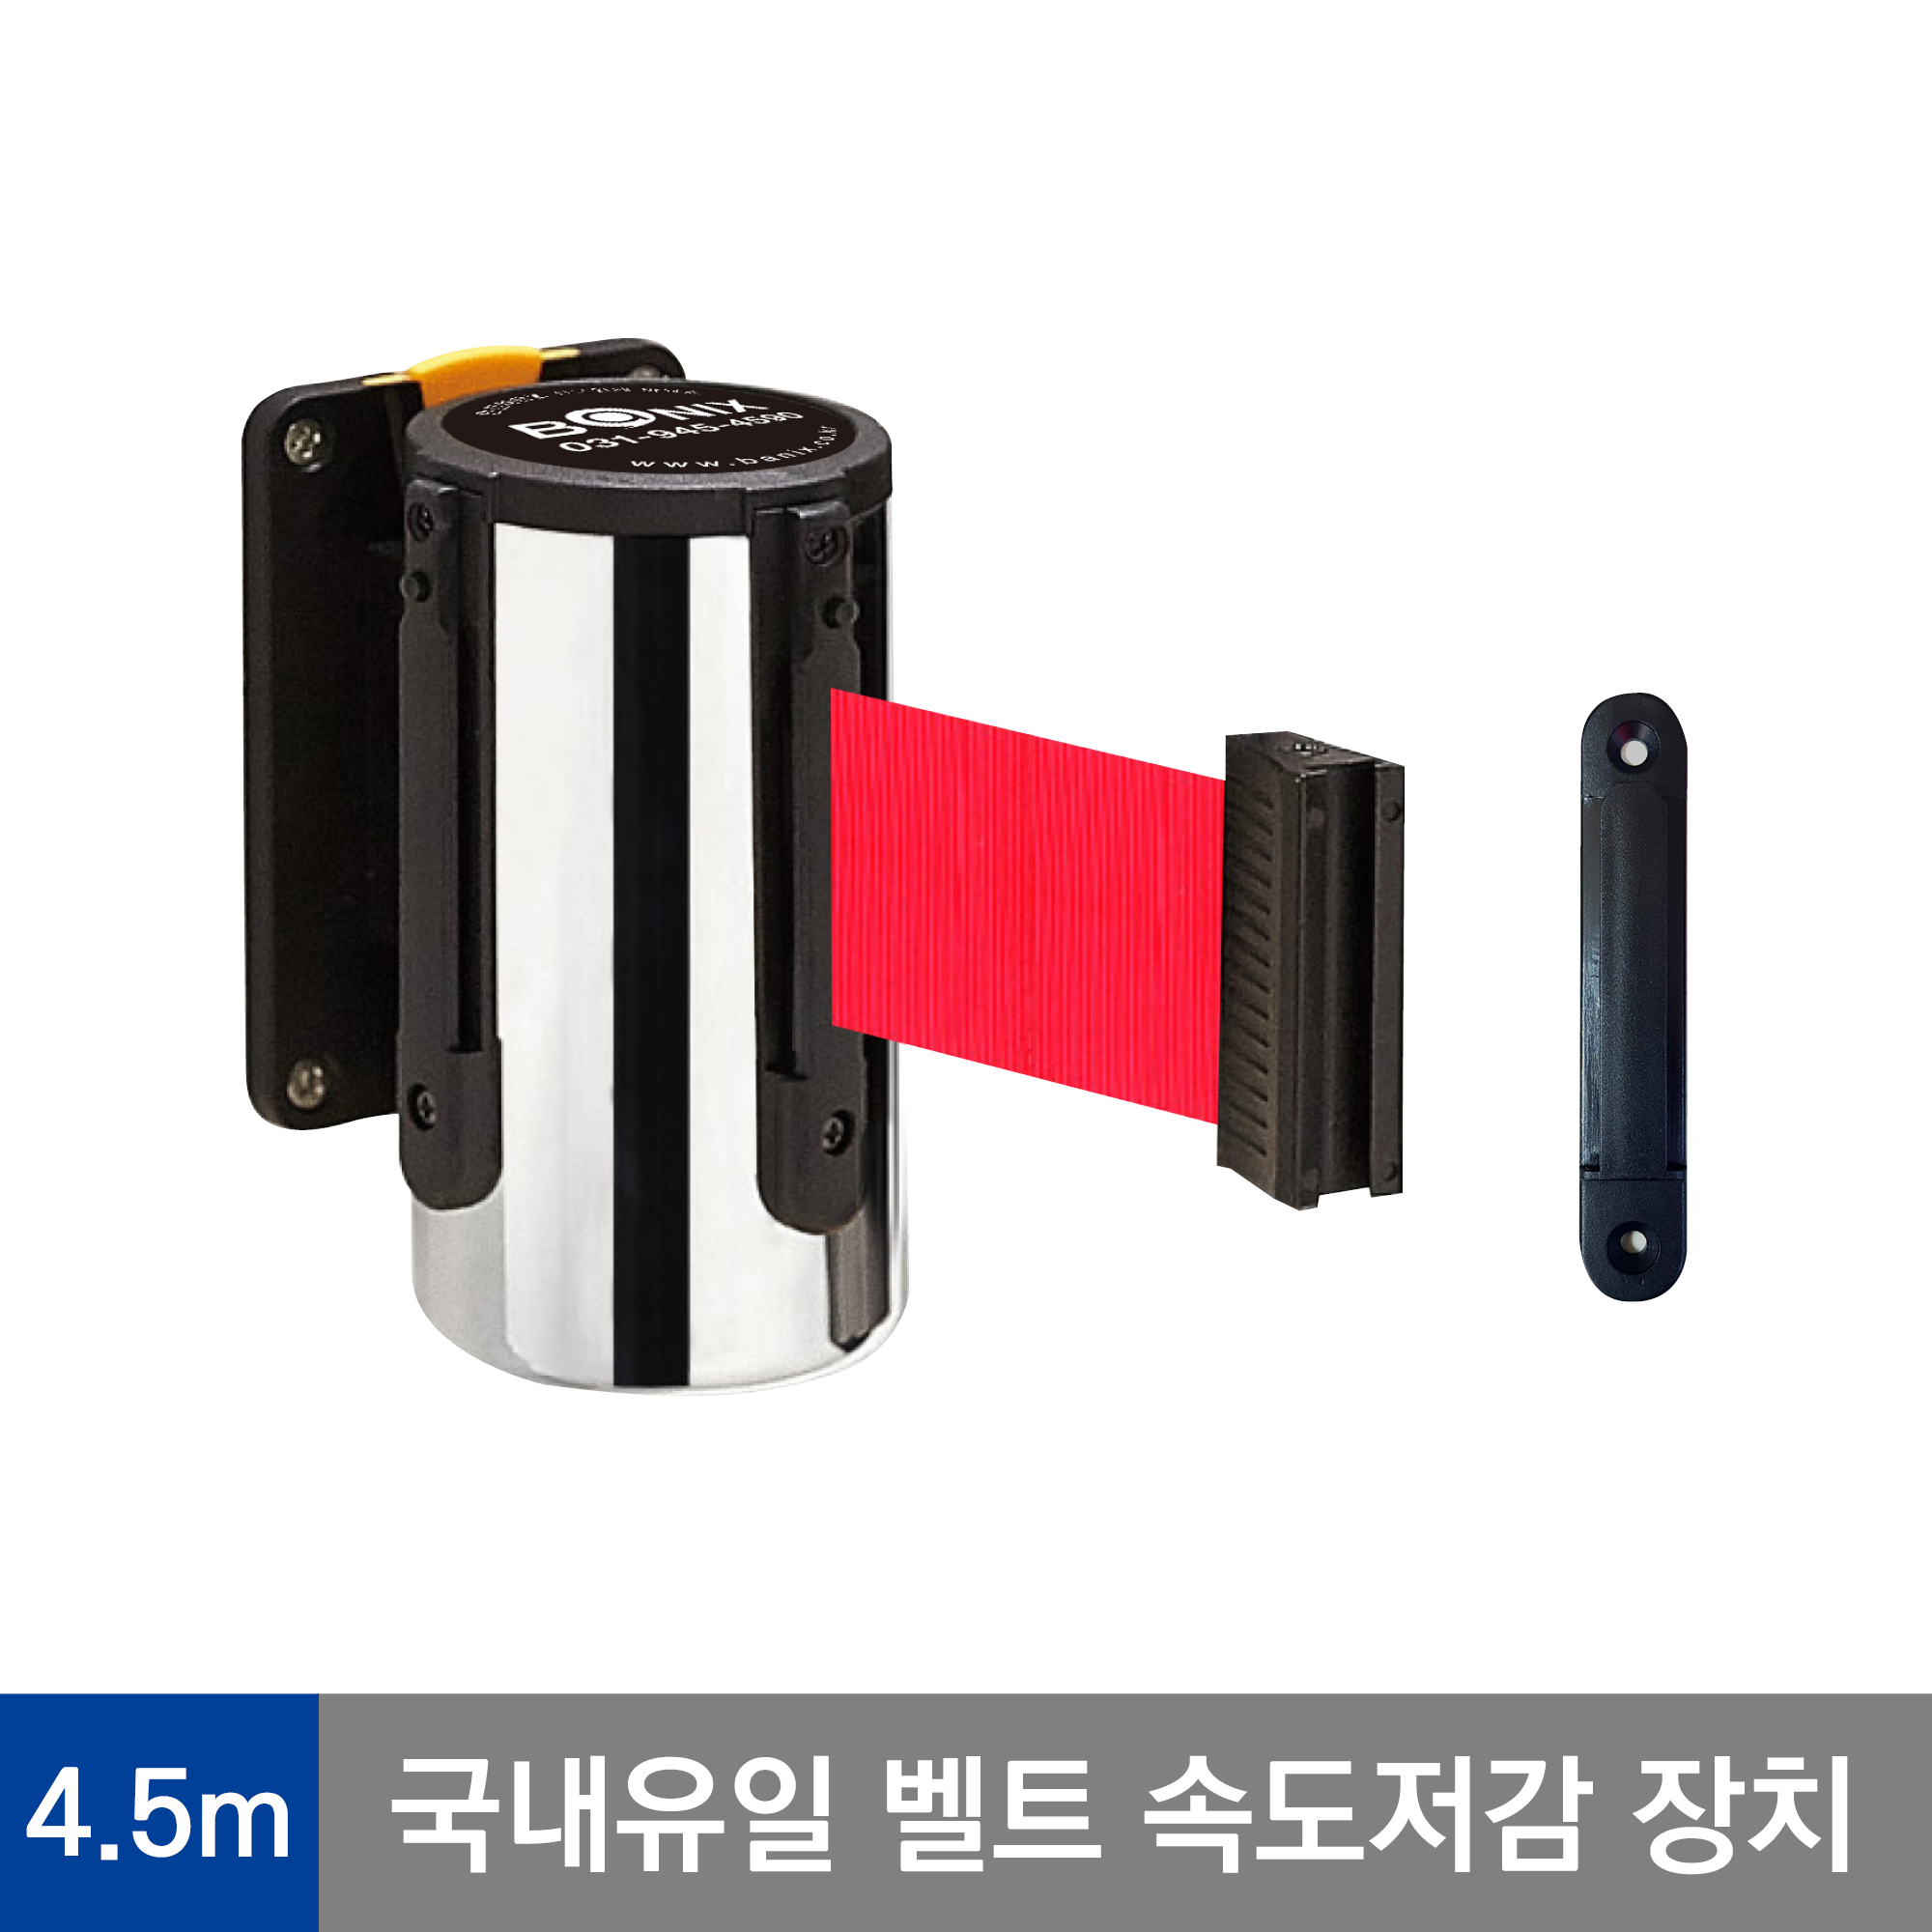 바닉스 벽걸이형 안전차단봉 5cm 4.5M 프레임(실버) 안전장치 다기능 특허 가장 안전한 바닉스 벽걸이 차단봉 WST450-4.5m-red